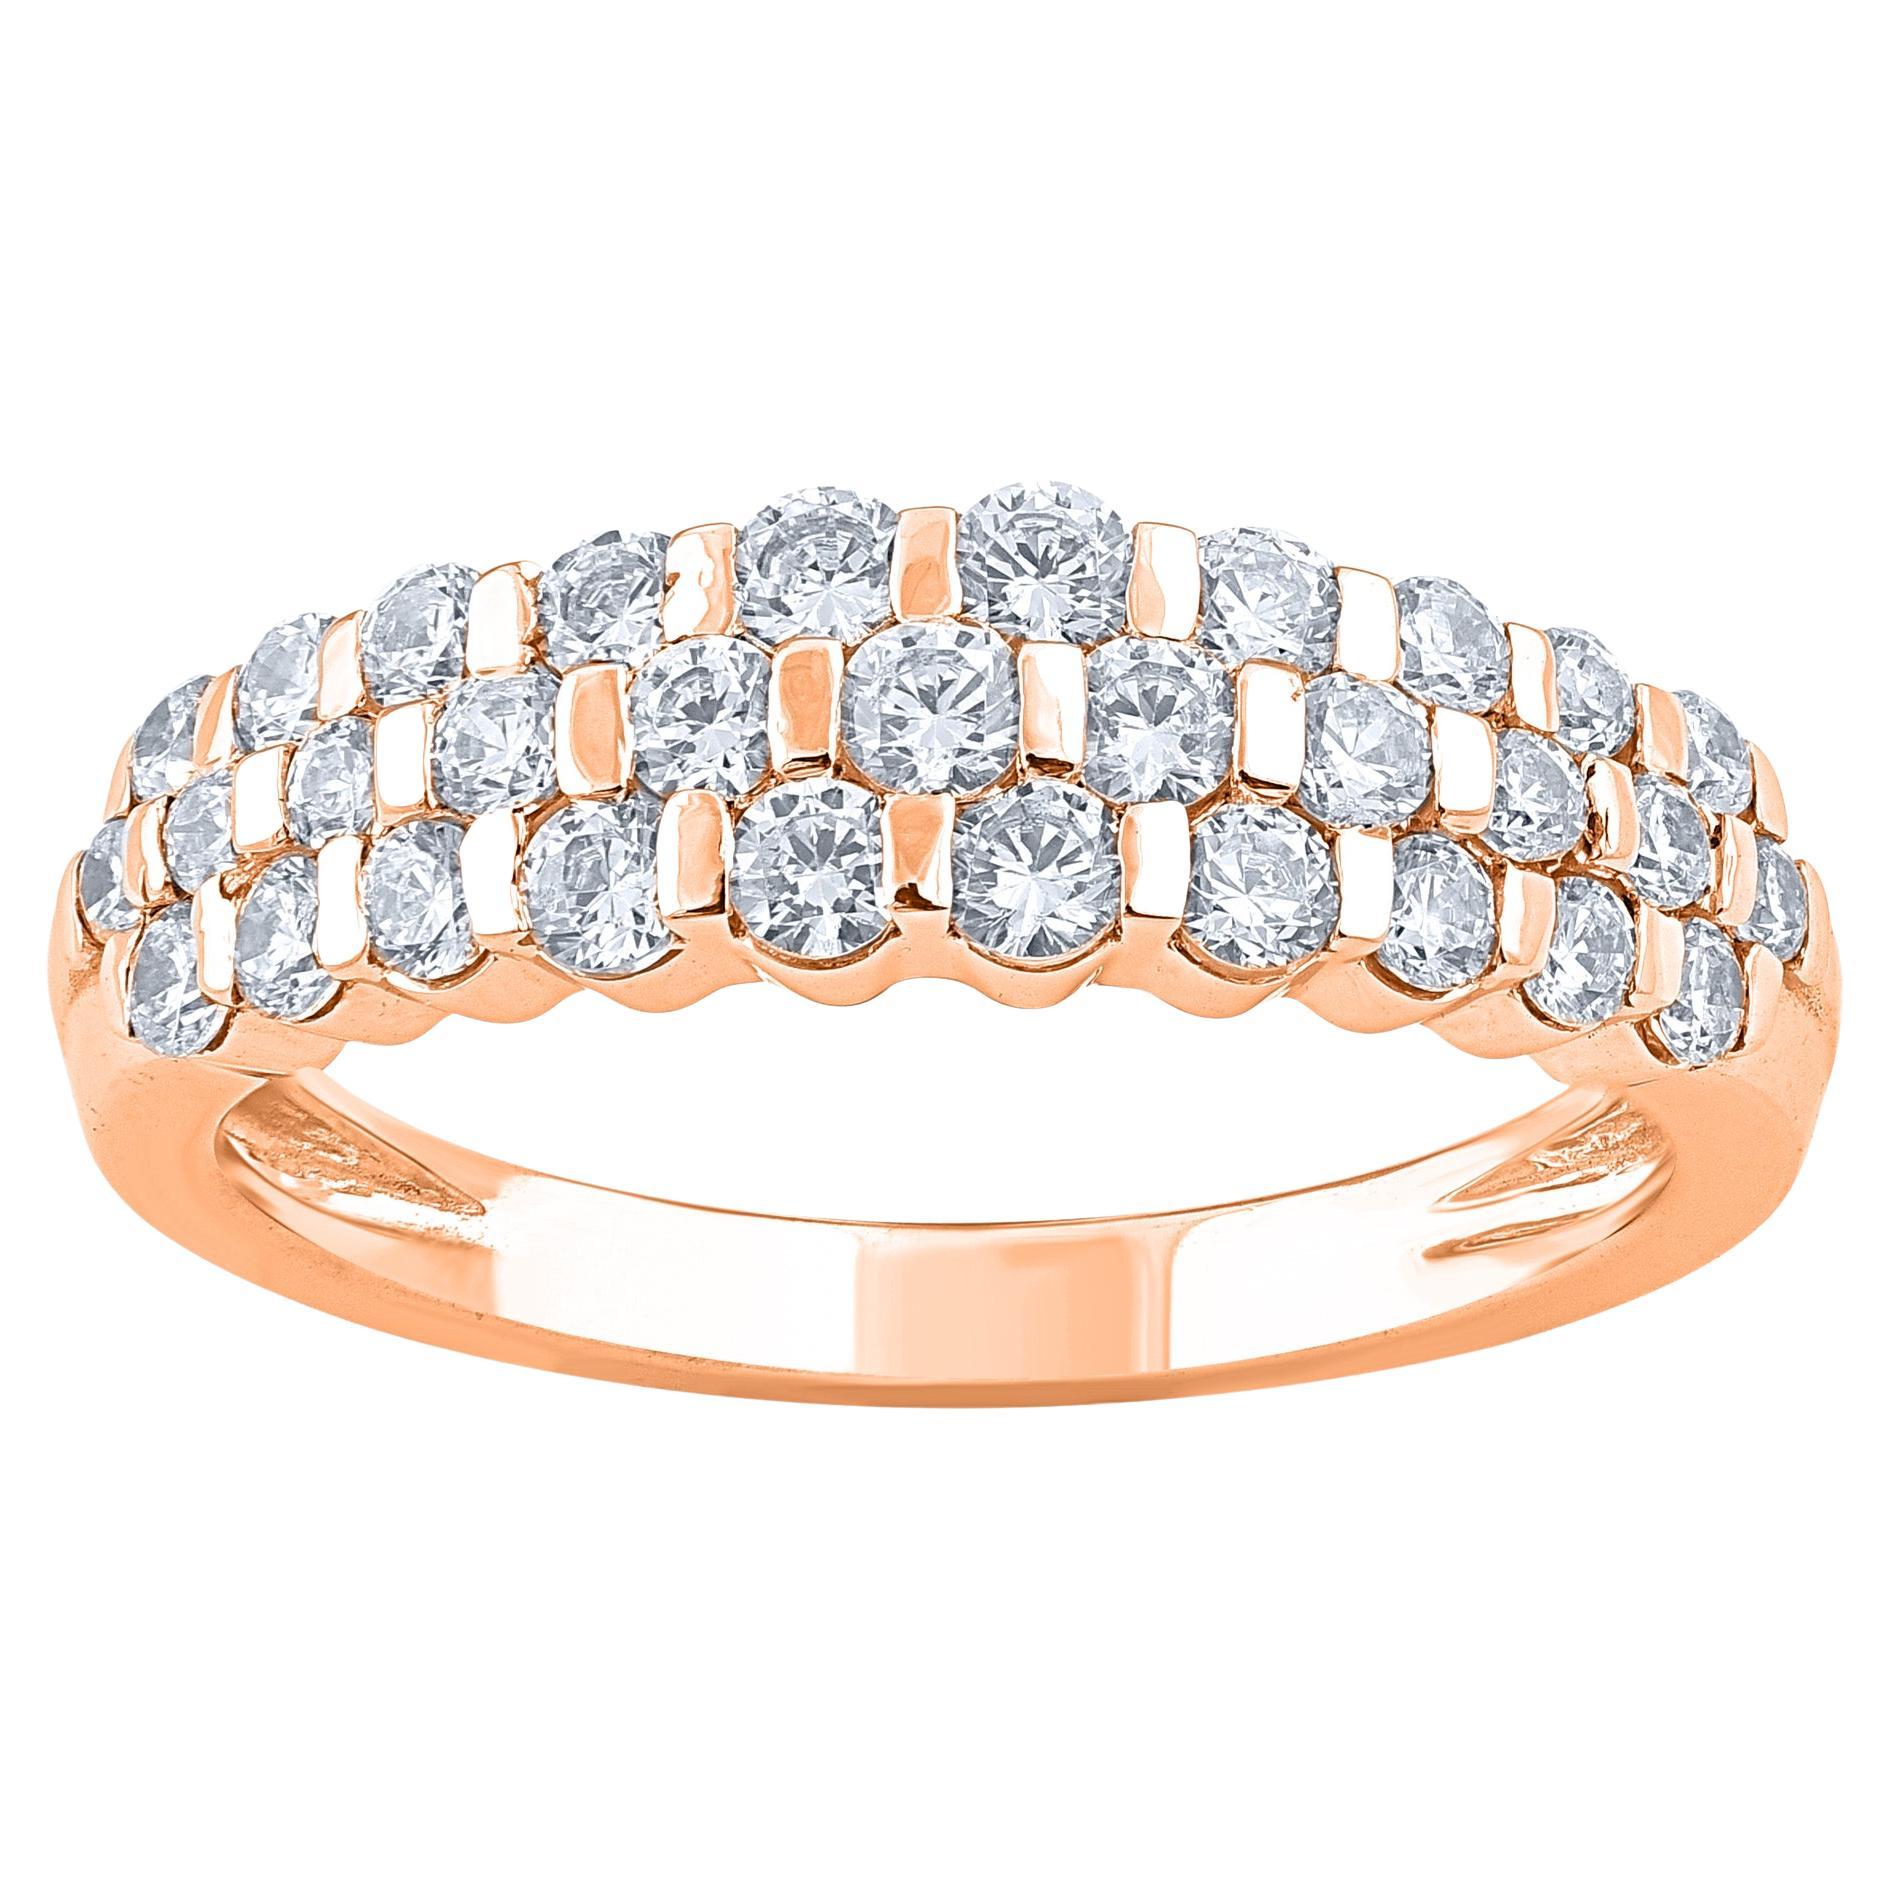 TJD 1.0 Carat Brilliant Cut Diamond 14KT Rose Gold Three Row Wedding Band Ring (anneau de mariage à trois rangs en or rose)